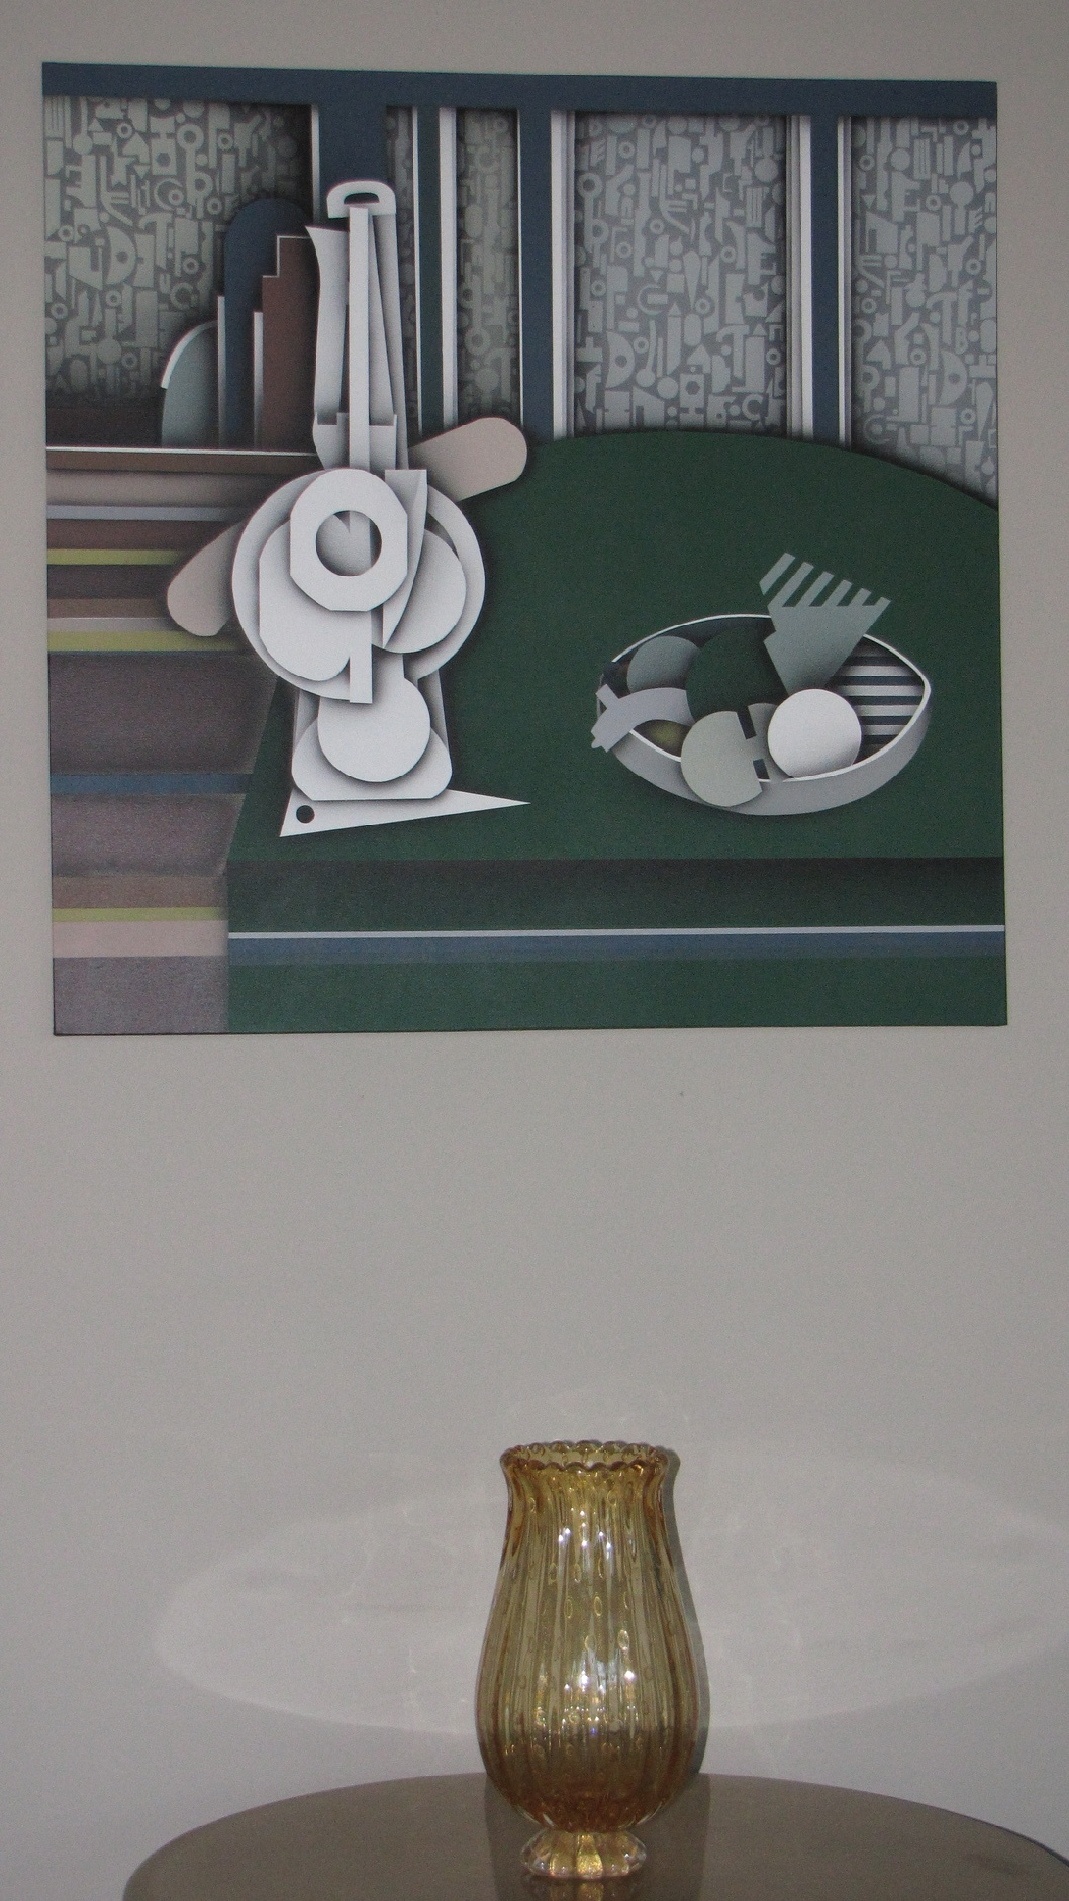 Michael Mattern, "Tisch mit Karaffe" nach Braque - div. Recycling-Maskteile, Bild: 2009 - Acryl / Lwd. - Mischtechnik. Foto: Stefan Wilke.